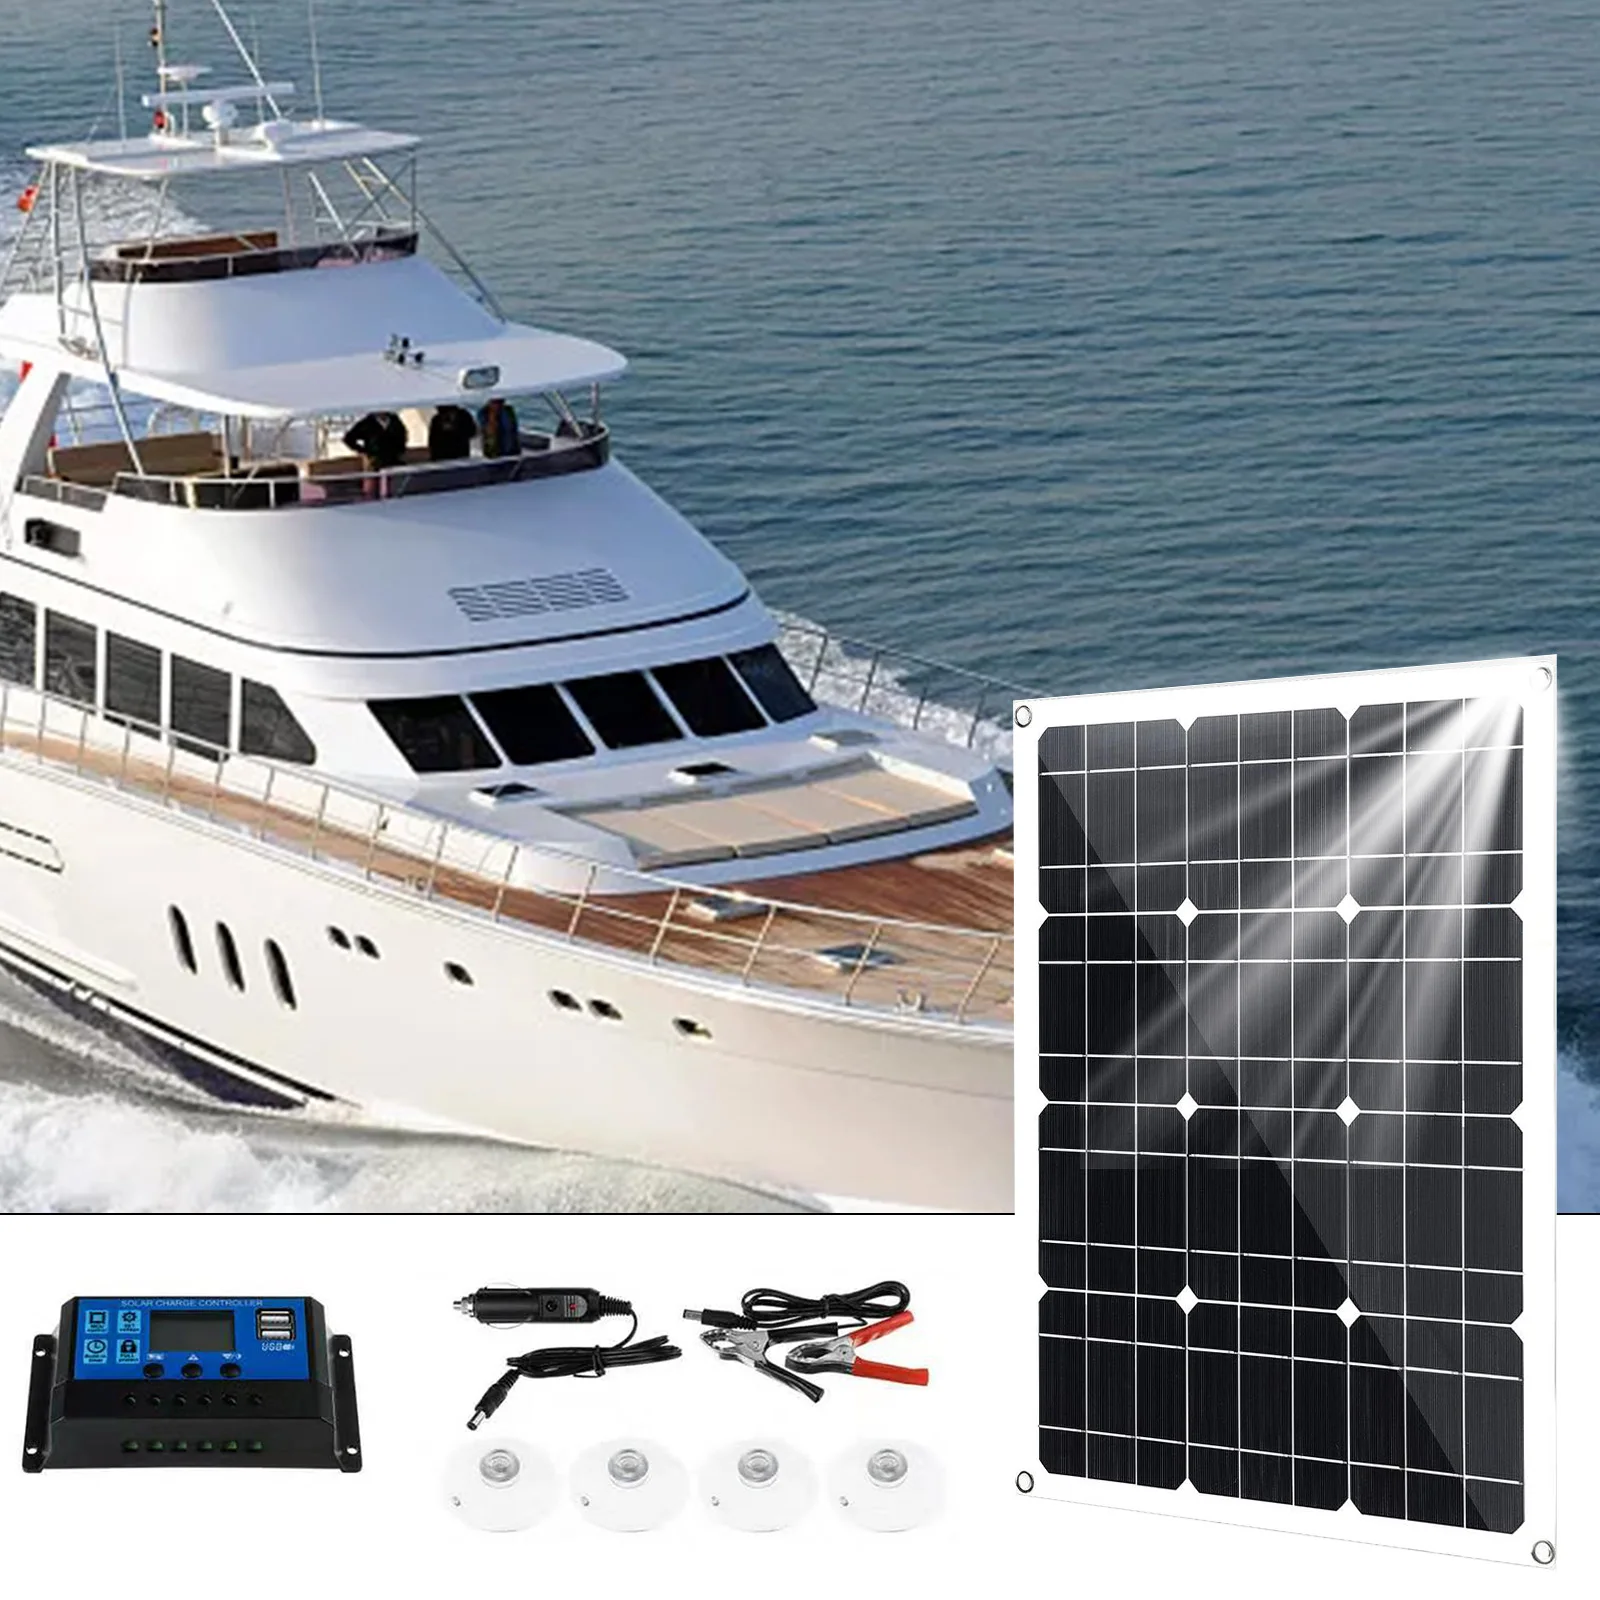 

30 Вт солнечная панель 12 В комплекты солнечных панелей 10 А Солнечный контроллер заряда зарядное устройство адаптеры для автомобиля RV Морско...